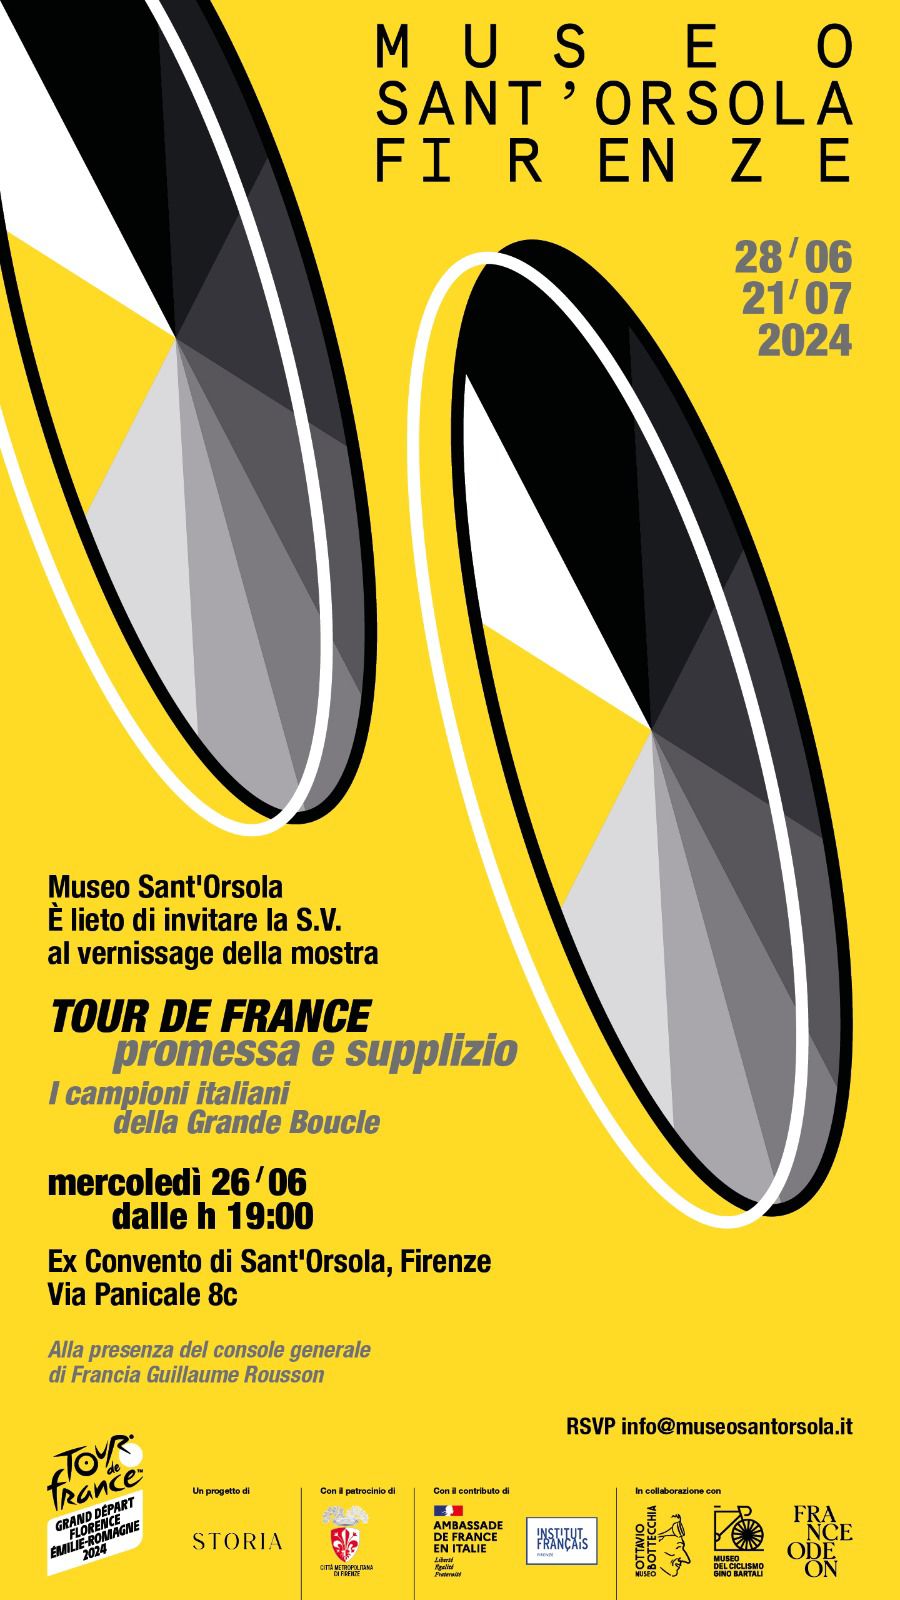 Tour de France 'Promessa e supplizio'